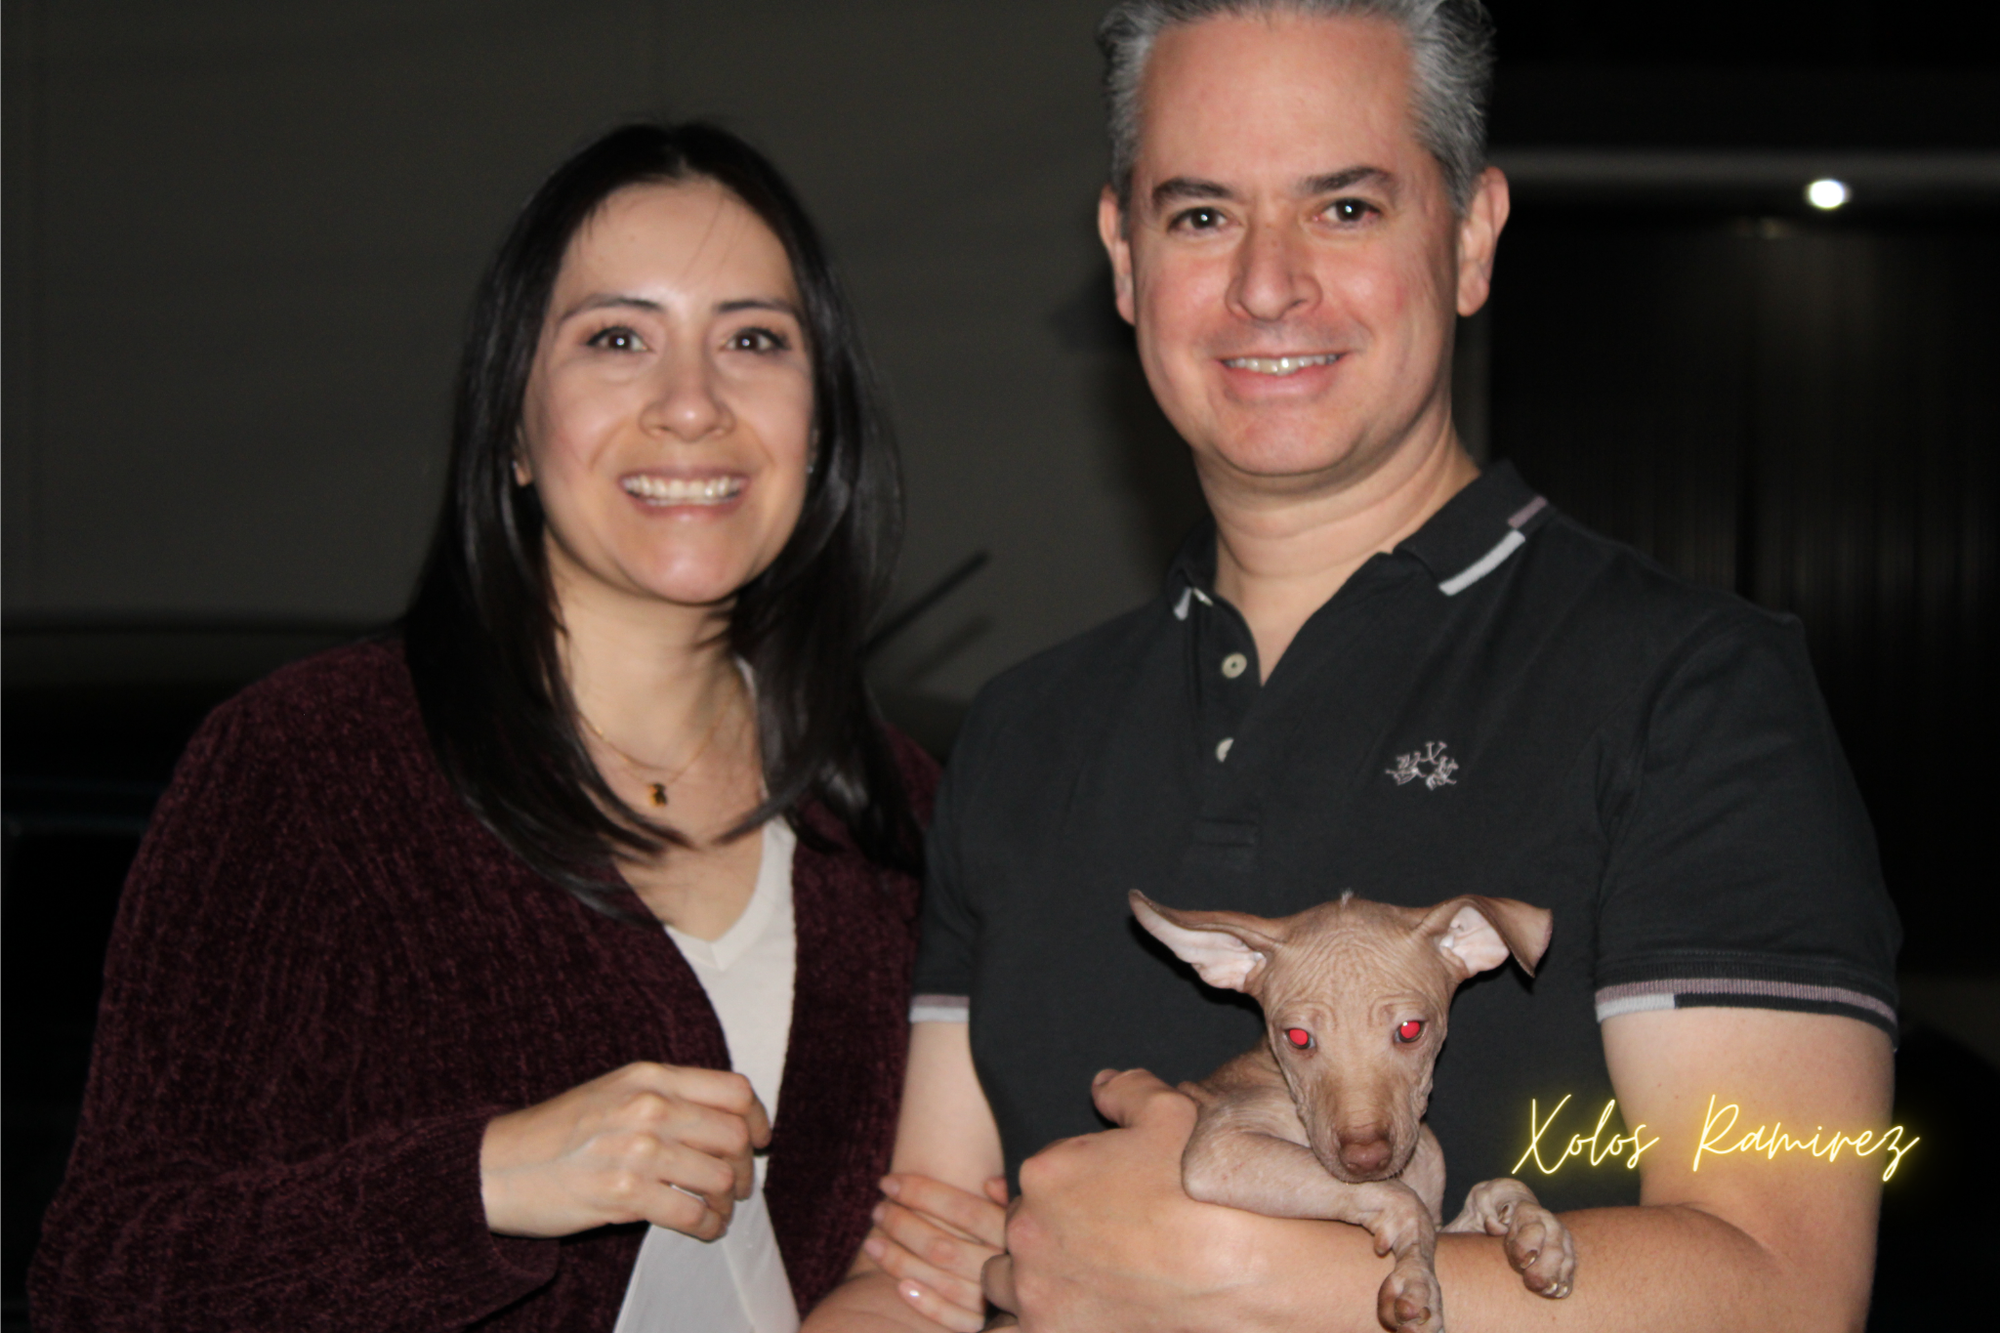 ¡Bienvenida a Casa! Segunda Xoloitzcuintle del Criadero Xolos Ramirez se une a la familia de Charlotte y Gerardo